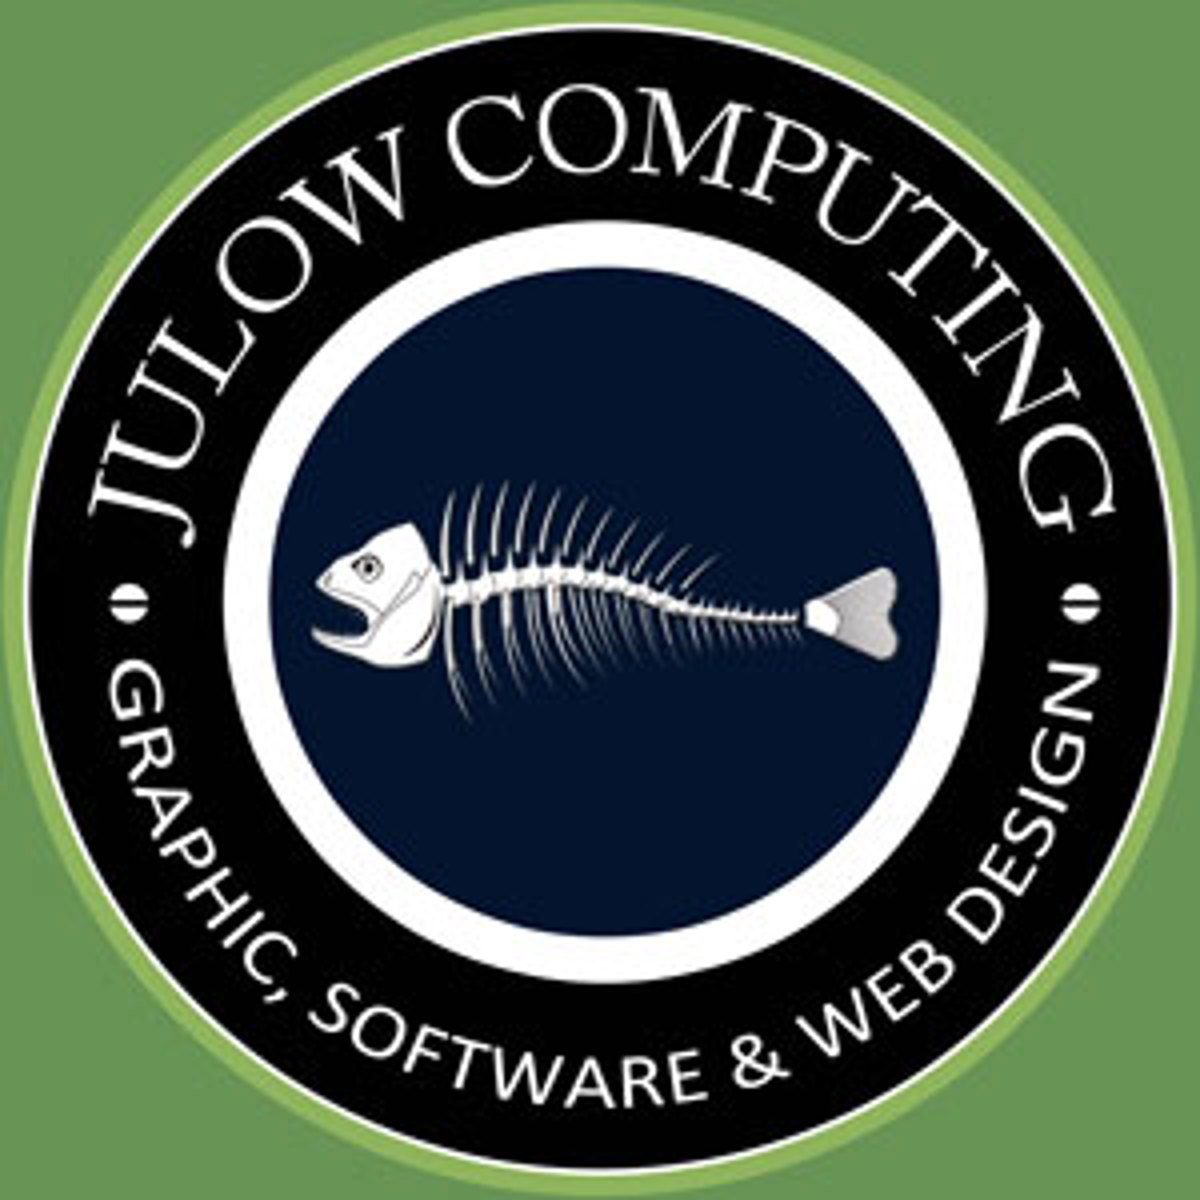 Julow Computing